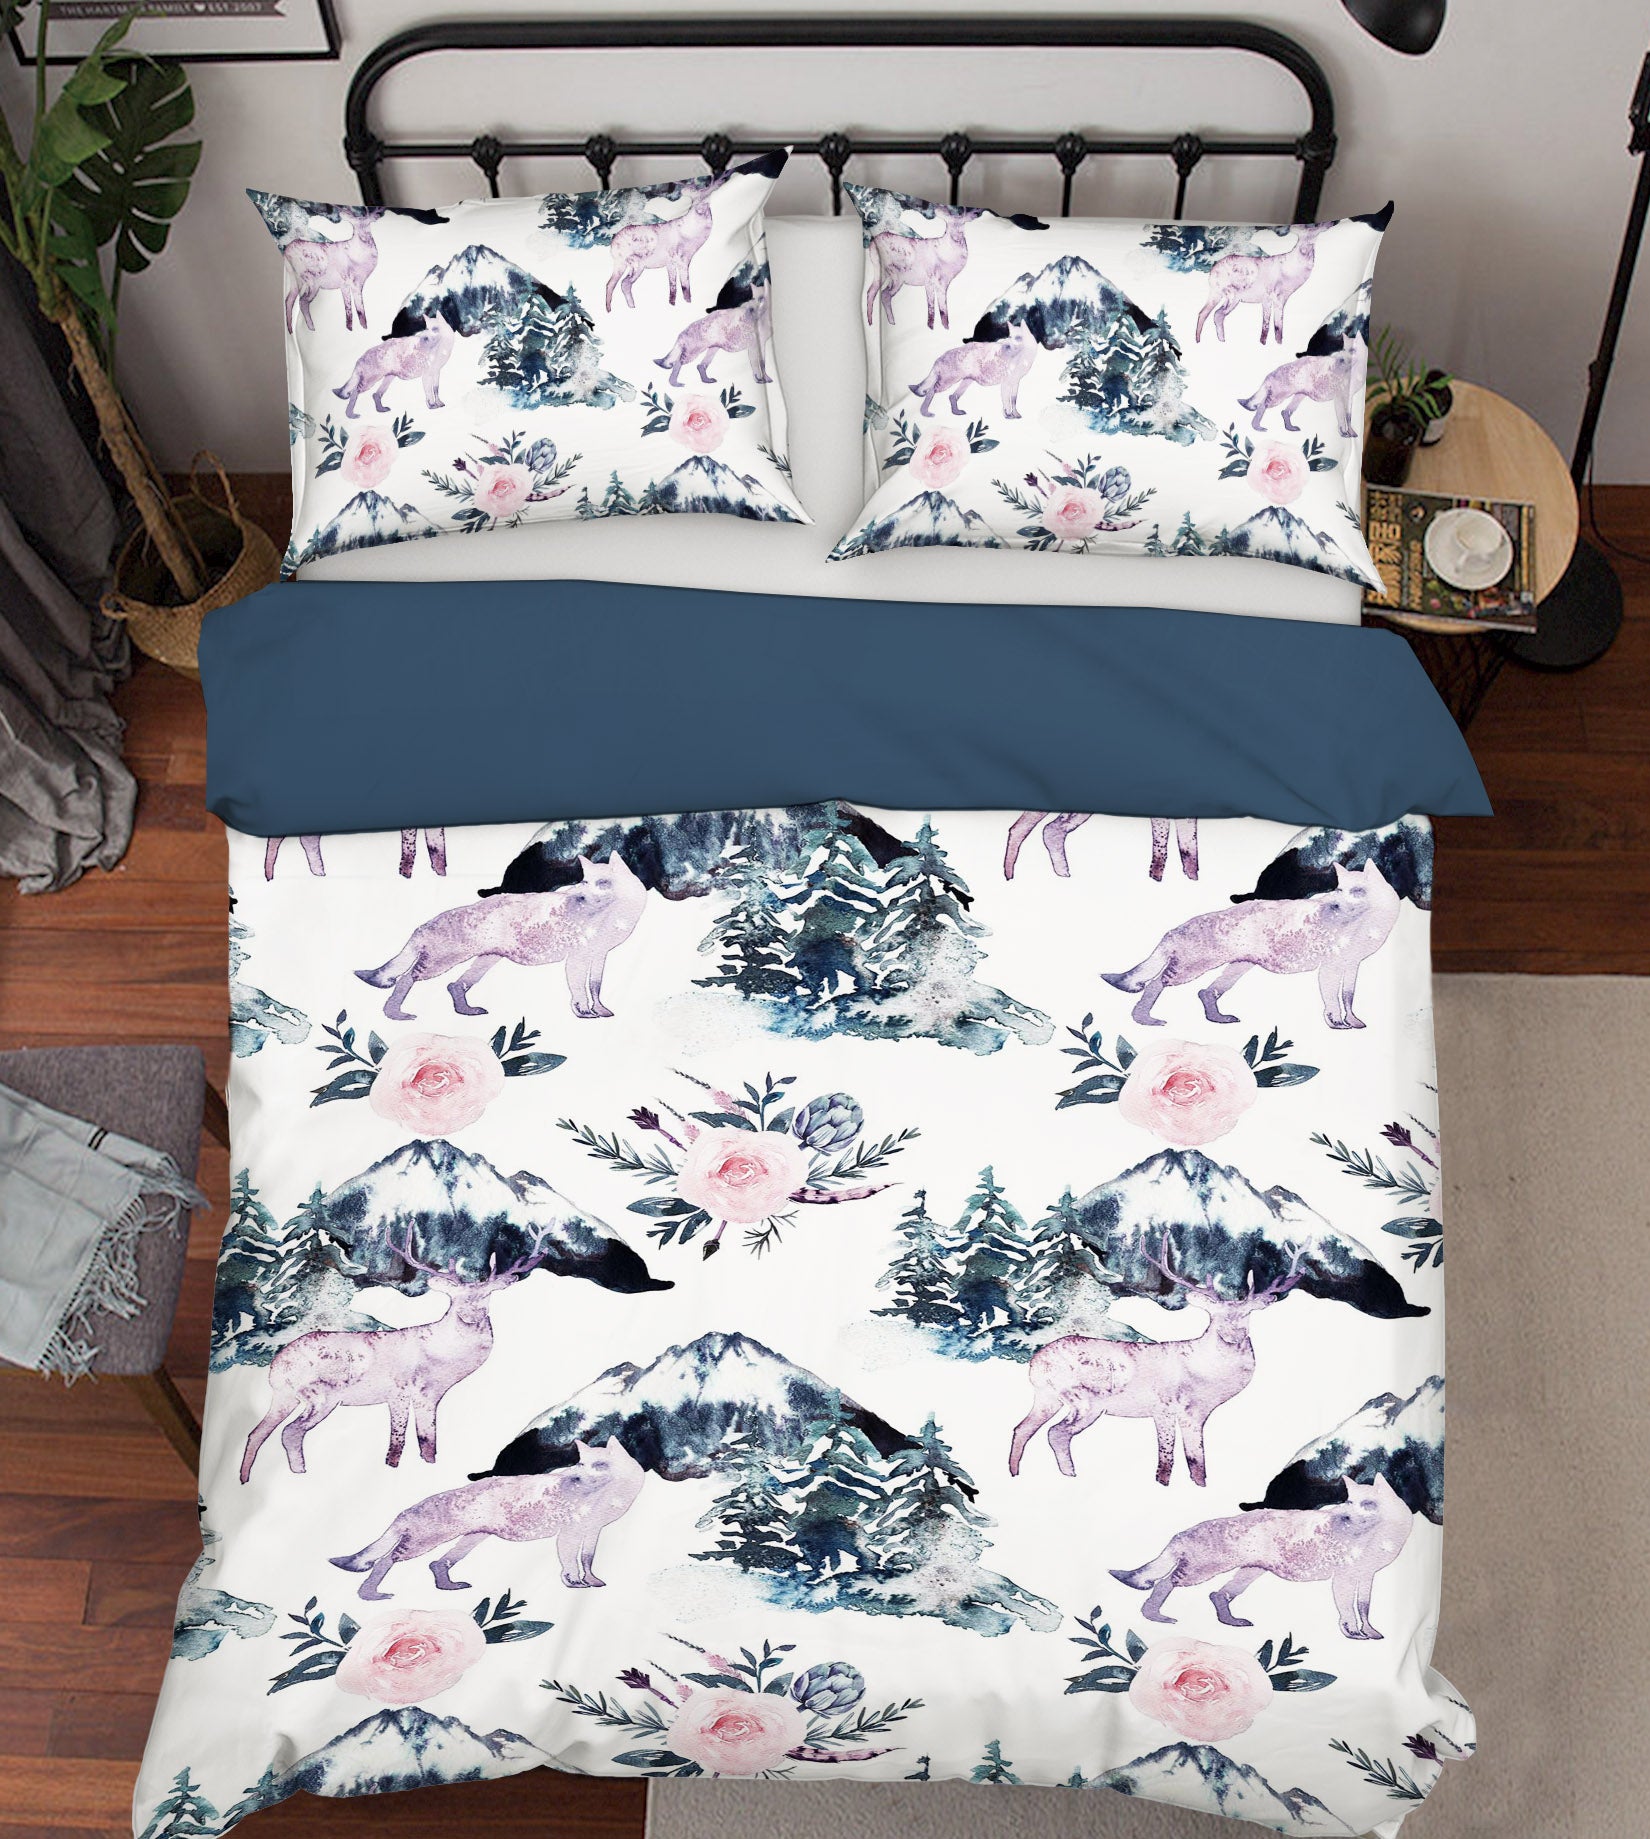 3D Fawn Mountain 069 Uta Naumann Bedding Bed Pillowcases Quilt